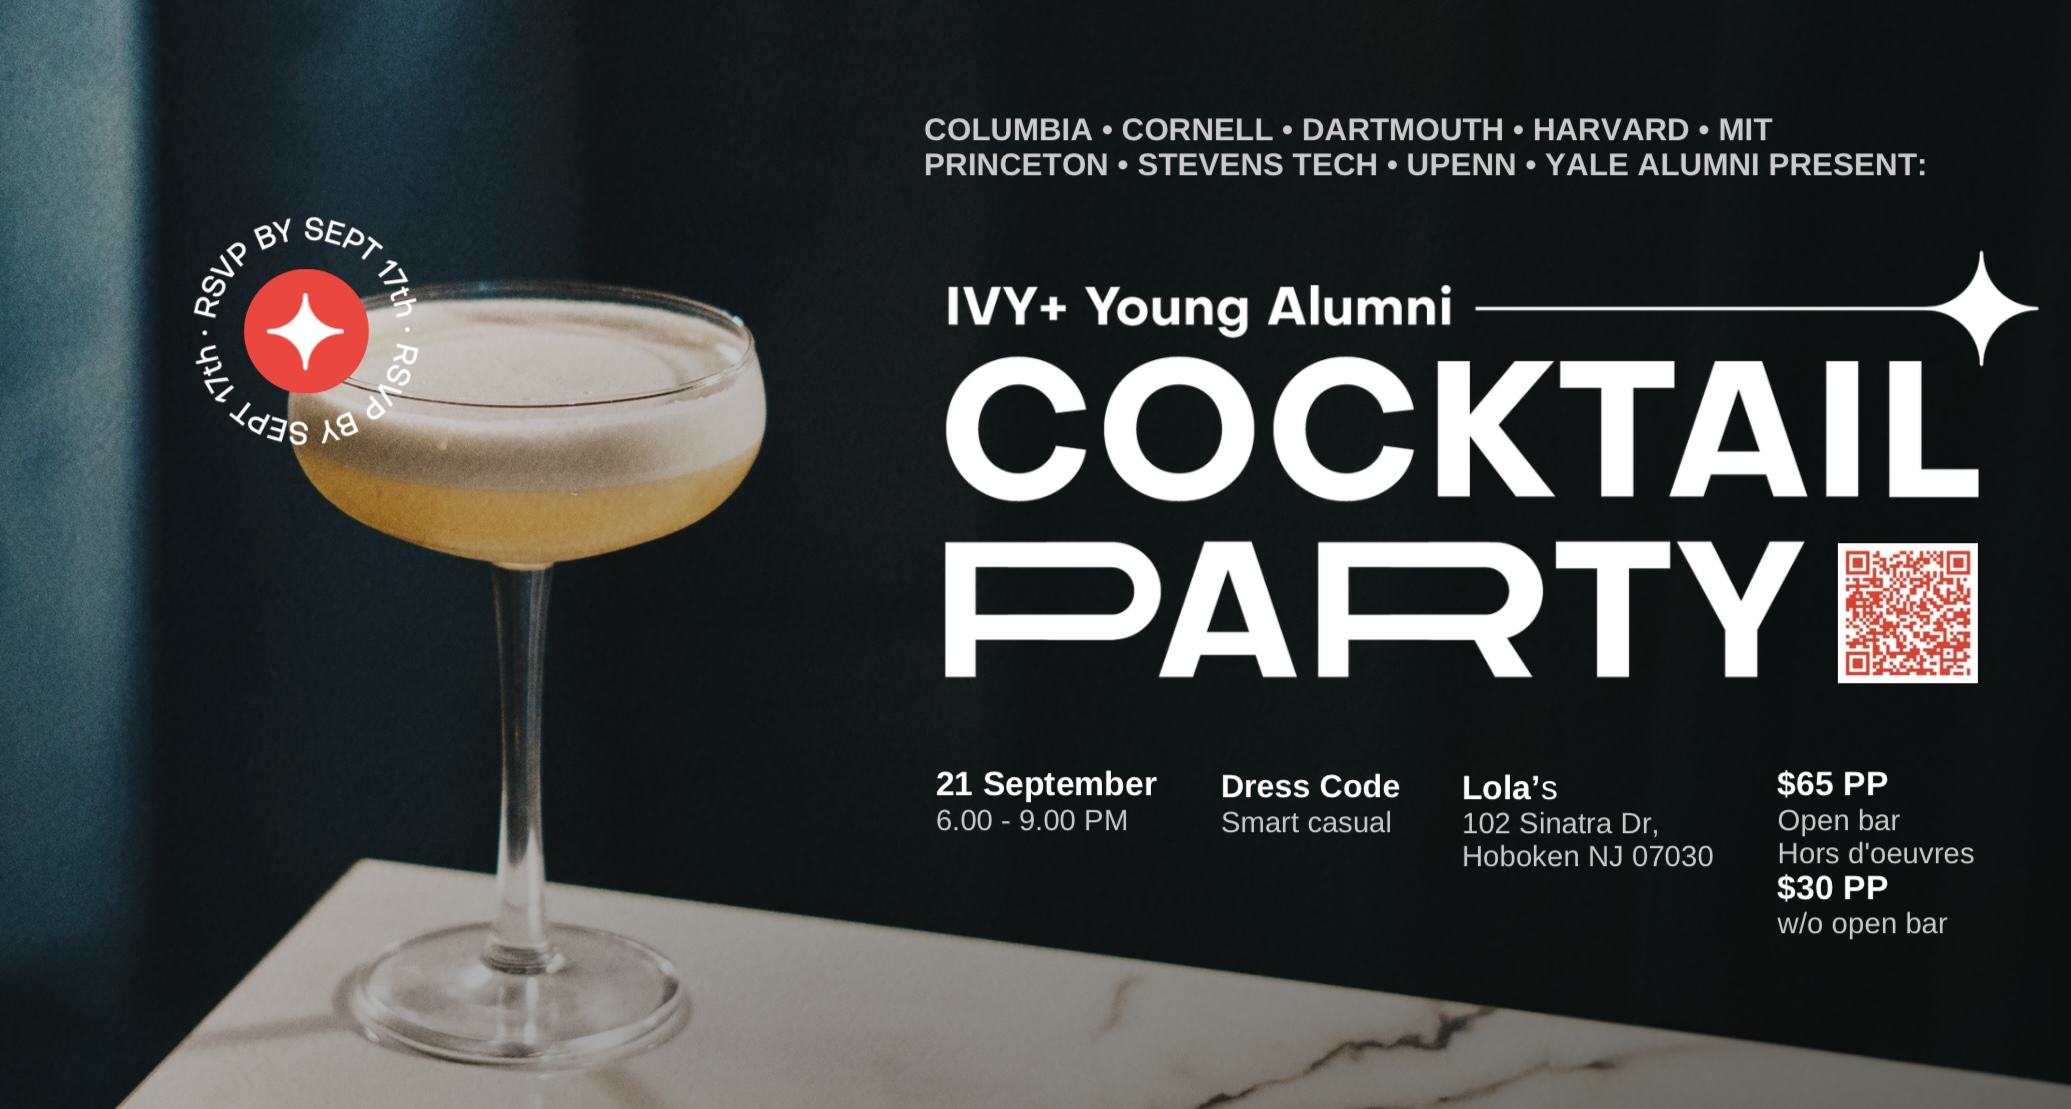 Ivy+ Alumni Cocktail Party in Hoboken